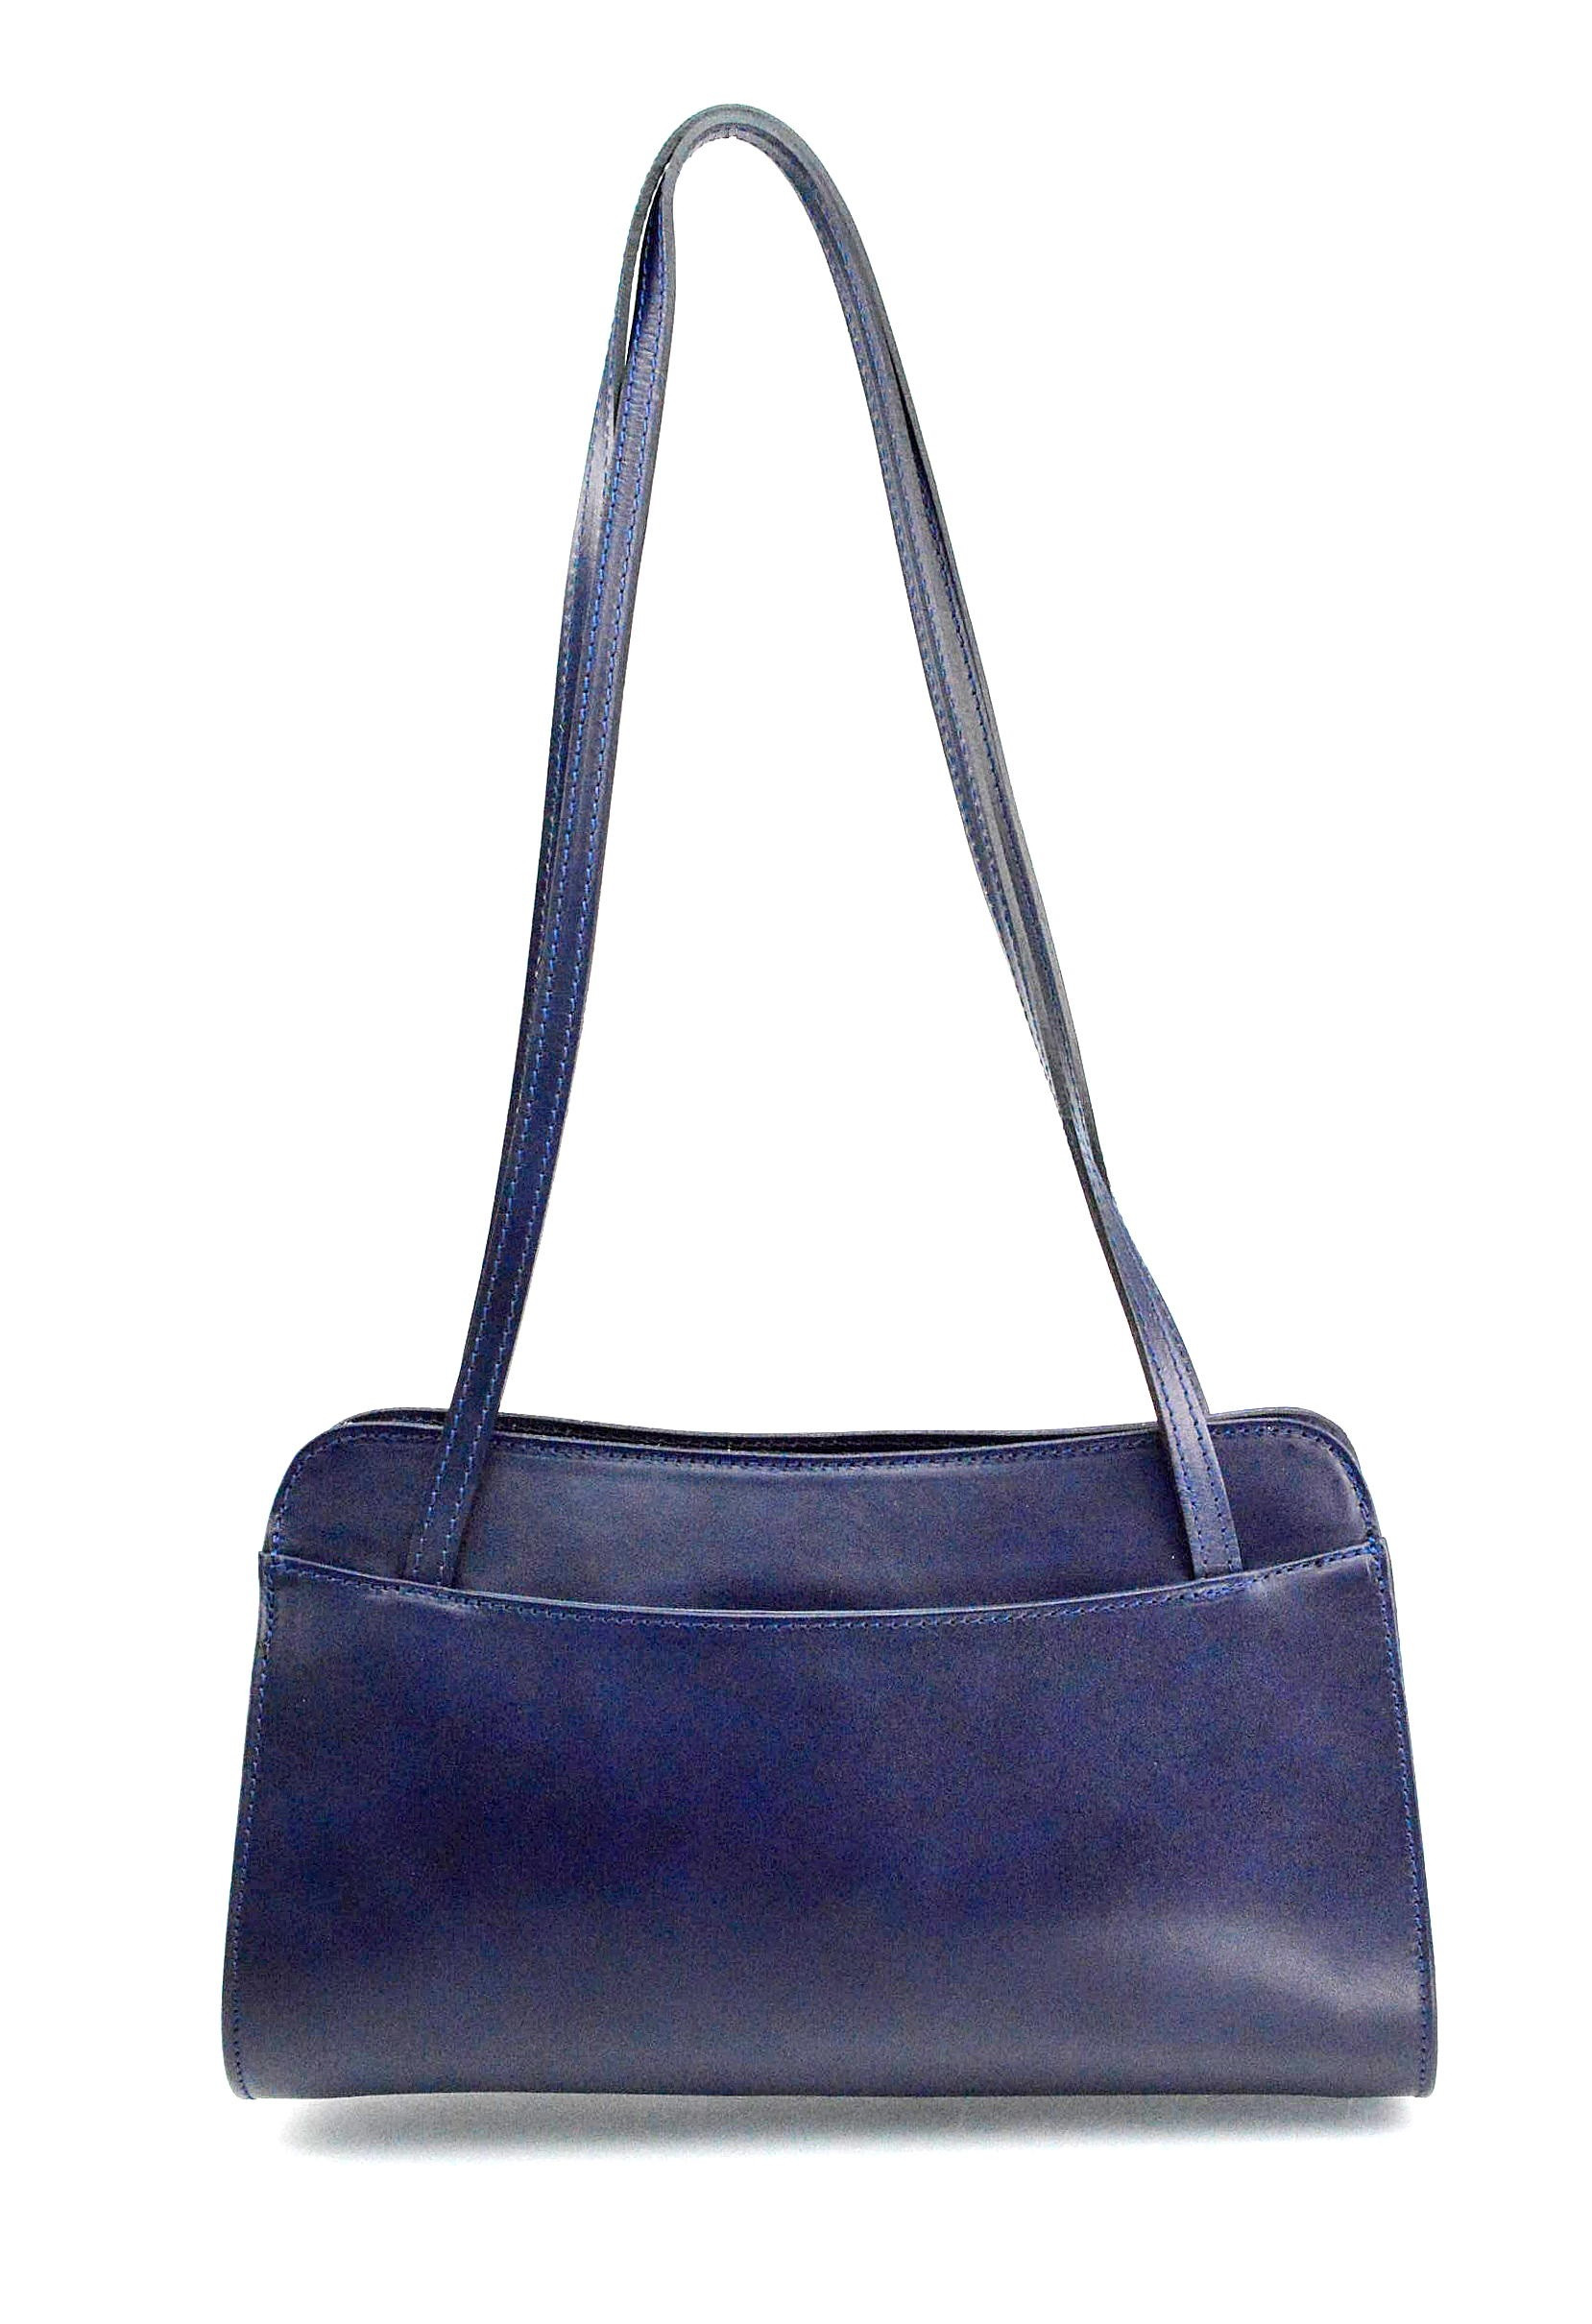 Větší stylová tmavě modrá kožená kabelka přes rameno Lesly